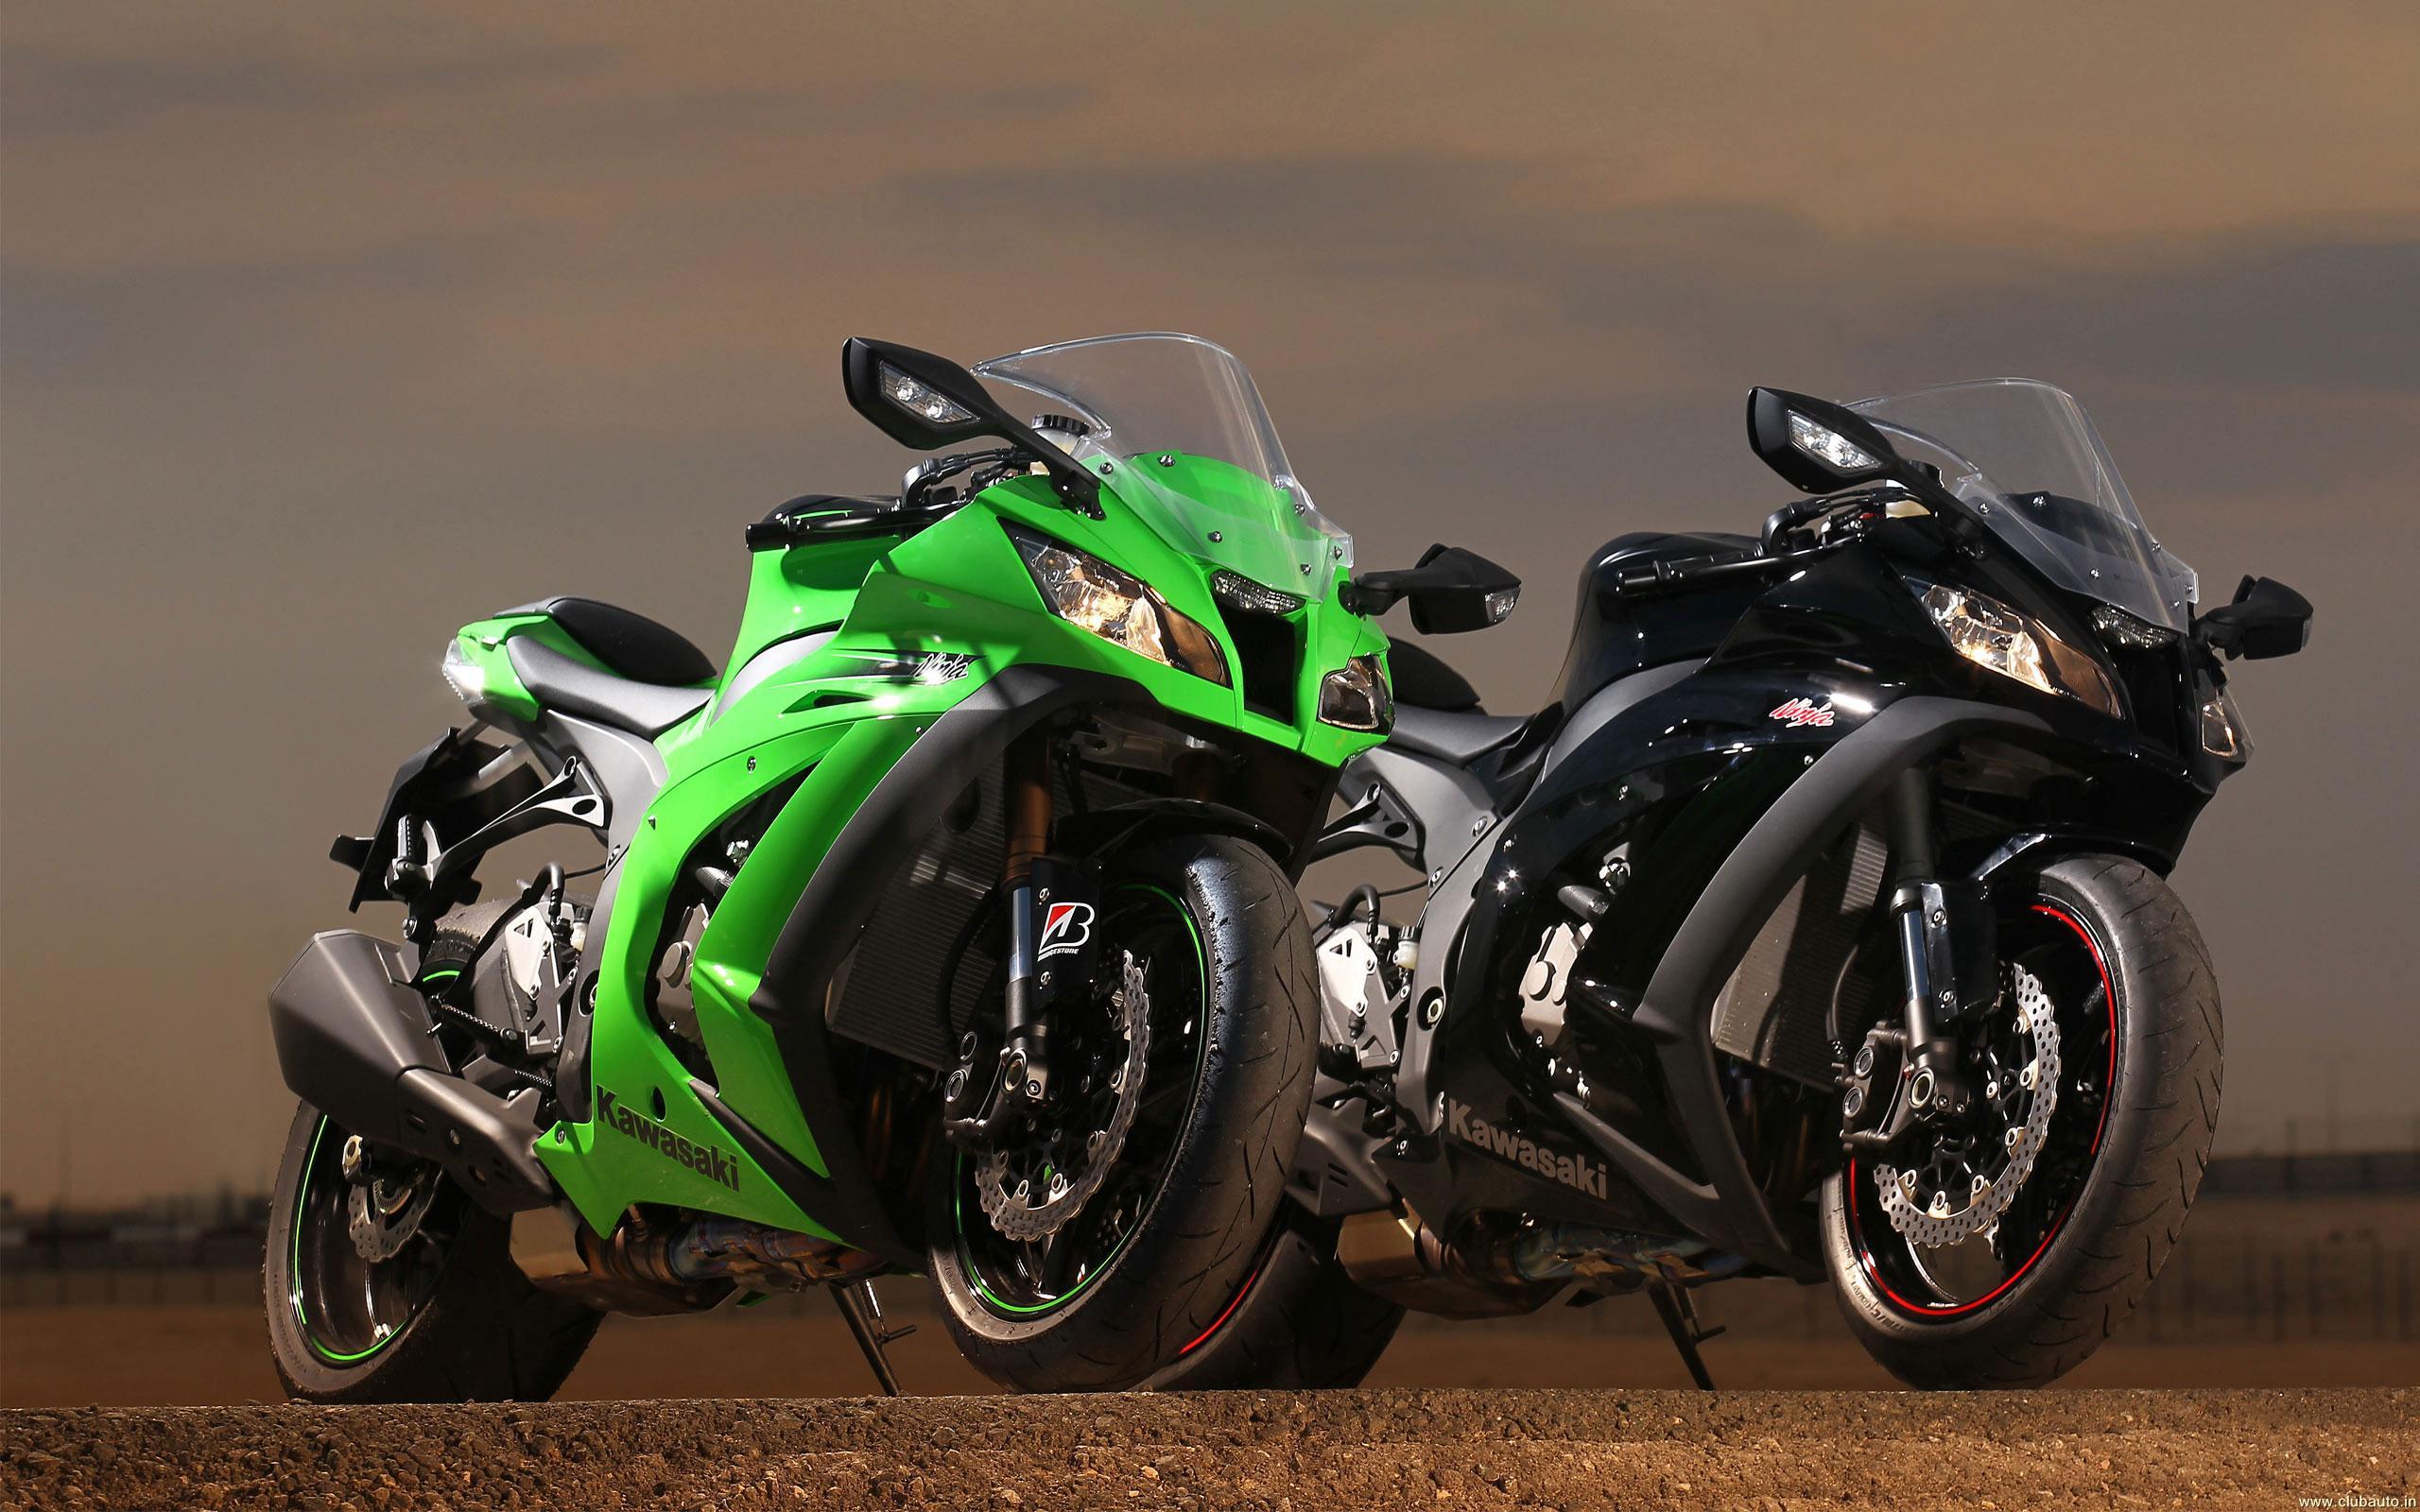 Wallpaper > Bikes > Kawasaki > Ninja ZX 10R > Kawasaki Ninja ZX 10R